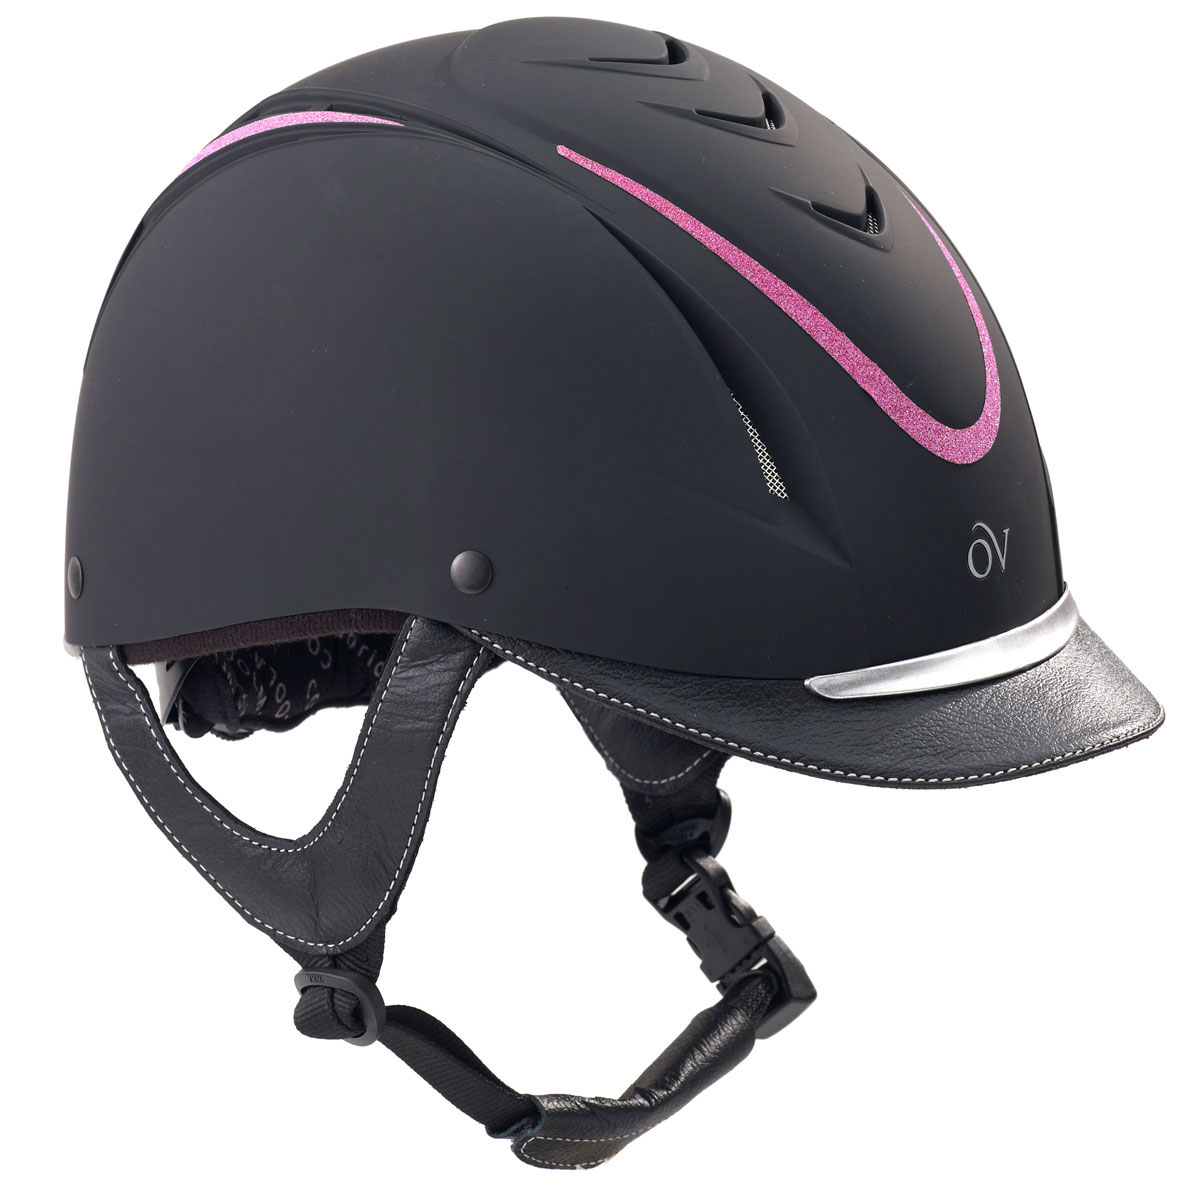 Details about  / Ovation Jump Air Helmet